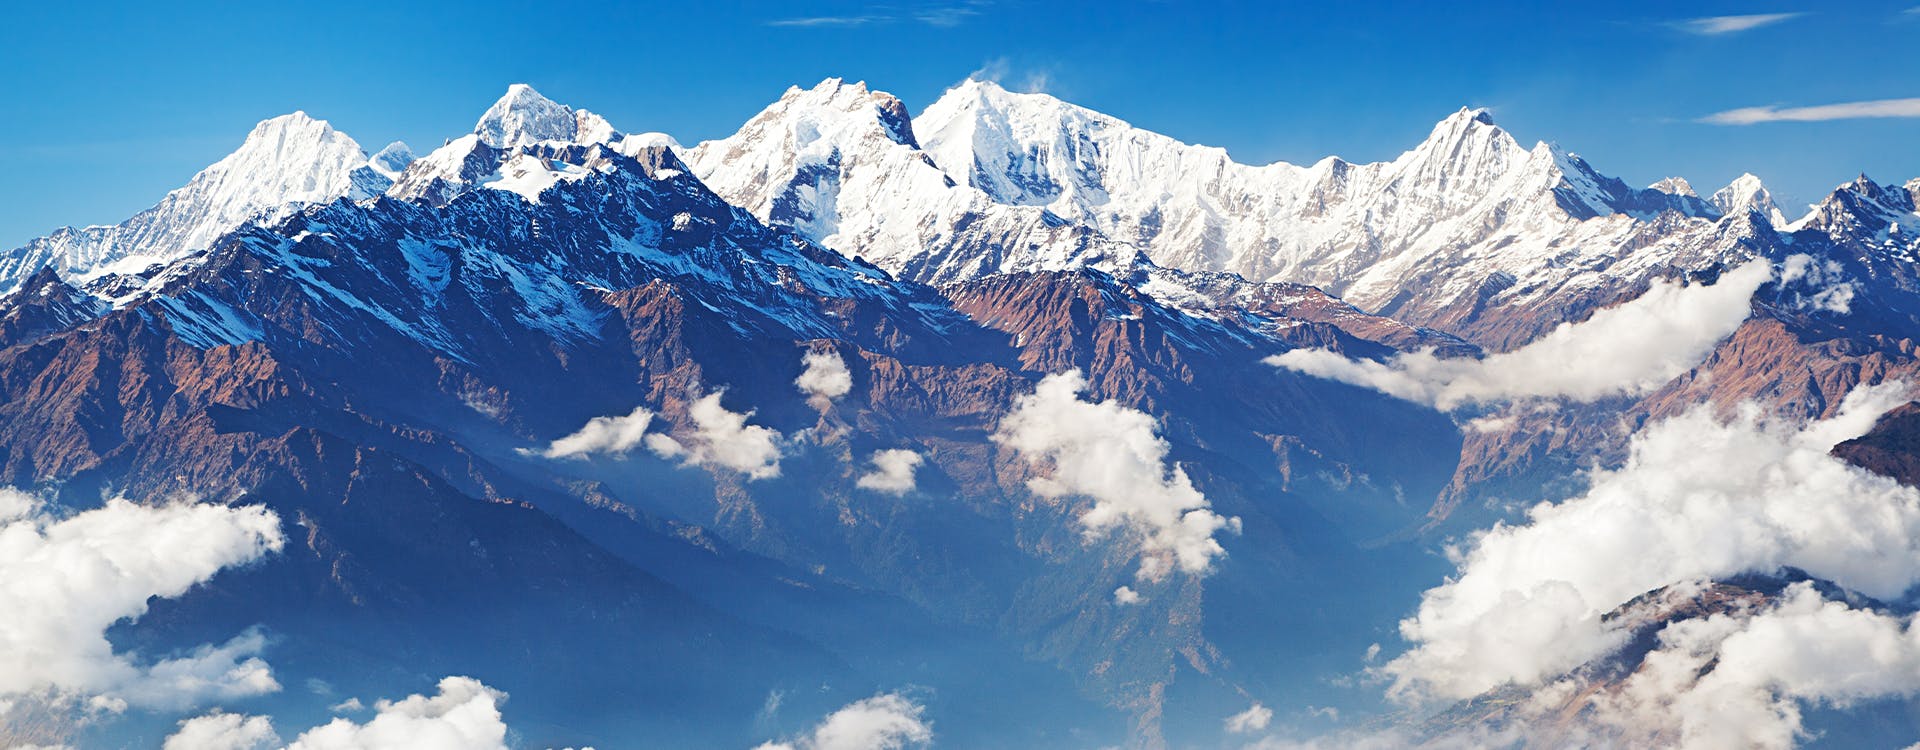 Ganesh Himal trek